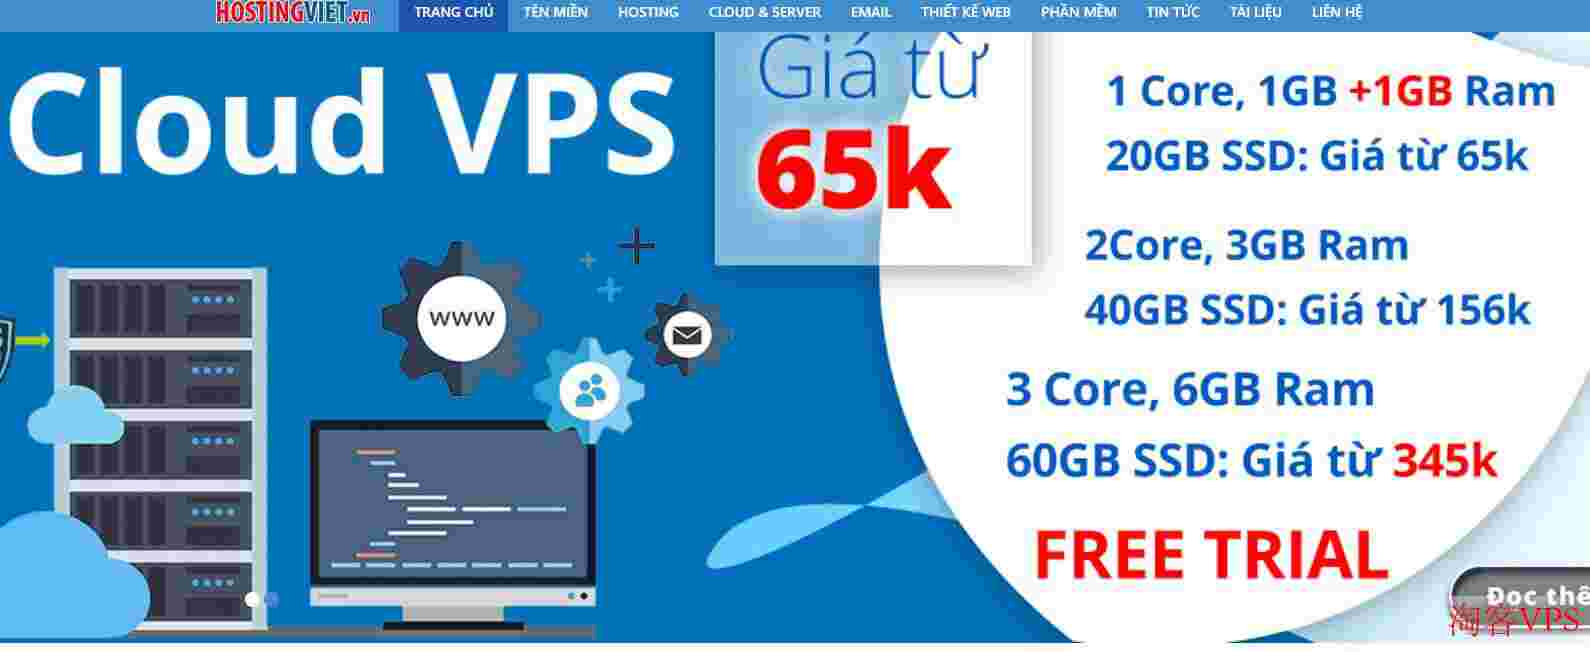 HostingViet十月优惠：越南VPS5折优惠，150M带宽，不限流量，原生IP